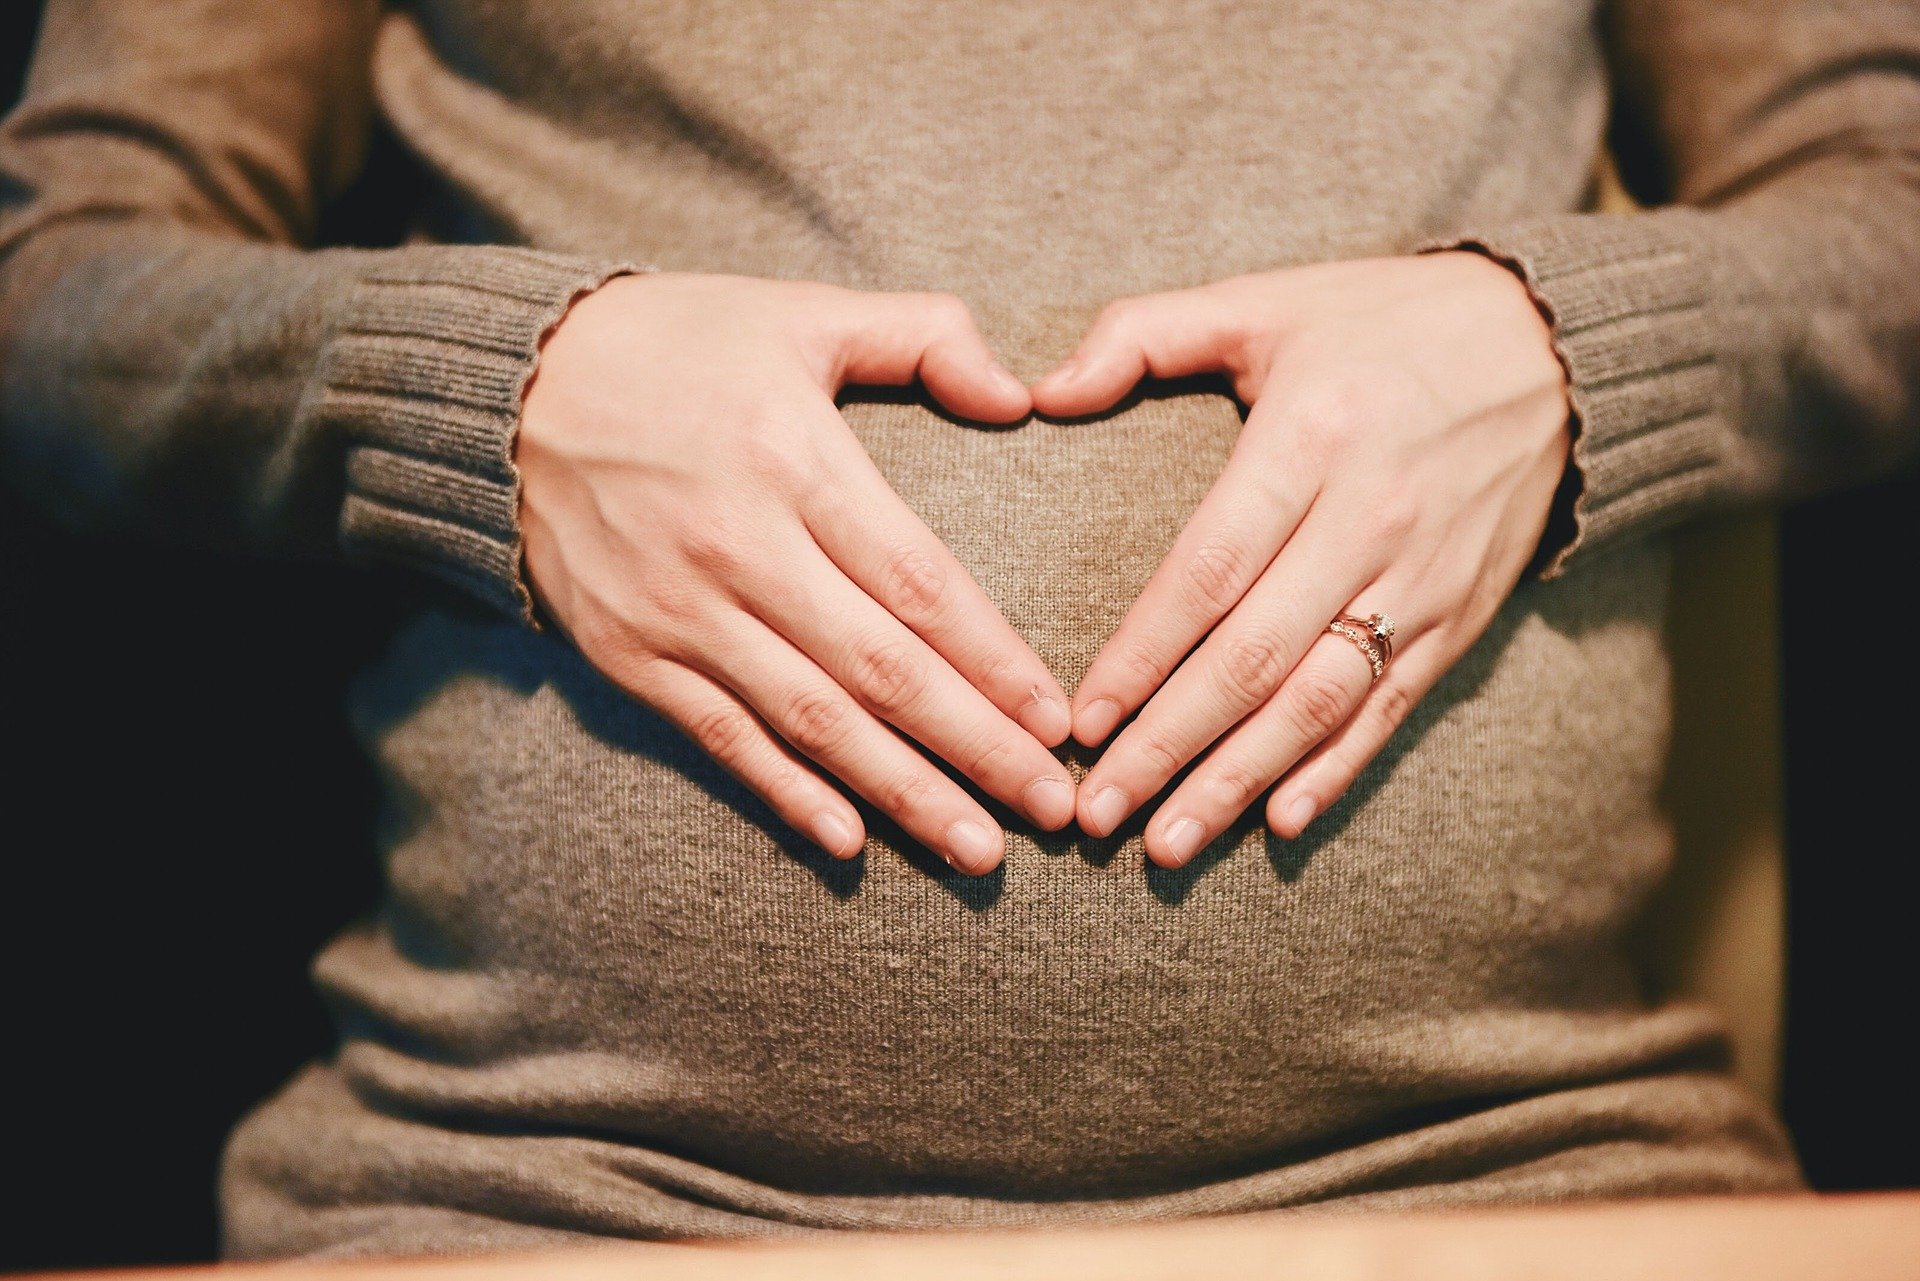 progesteron a zajście w ciąże